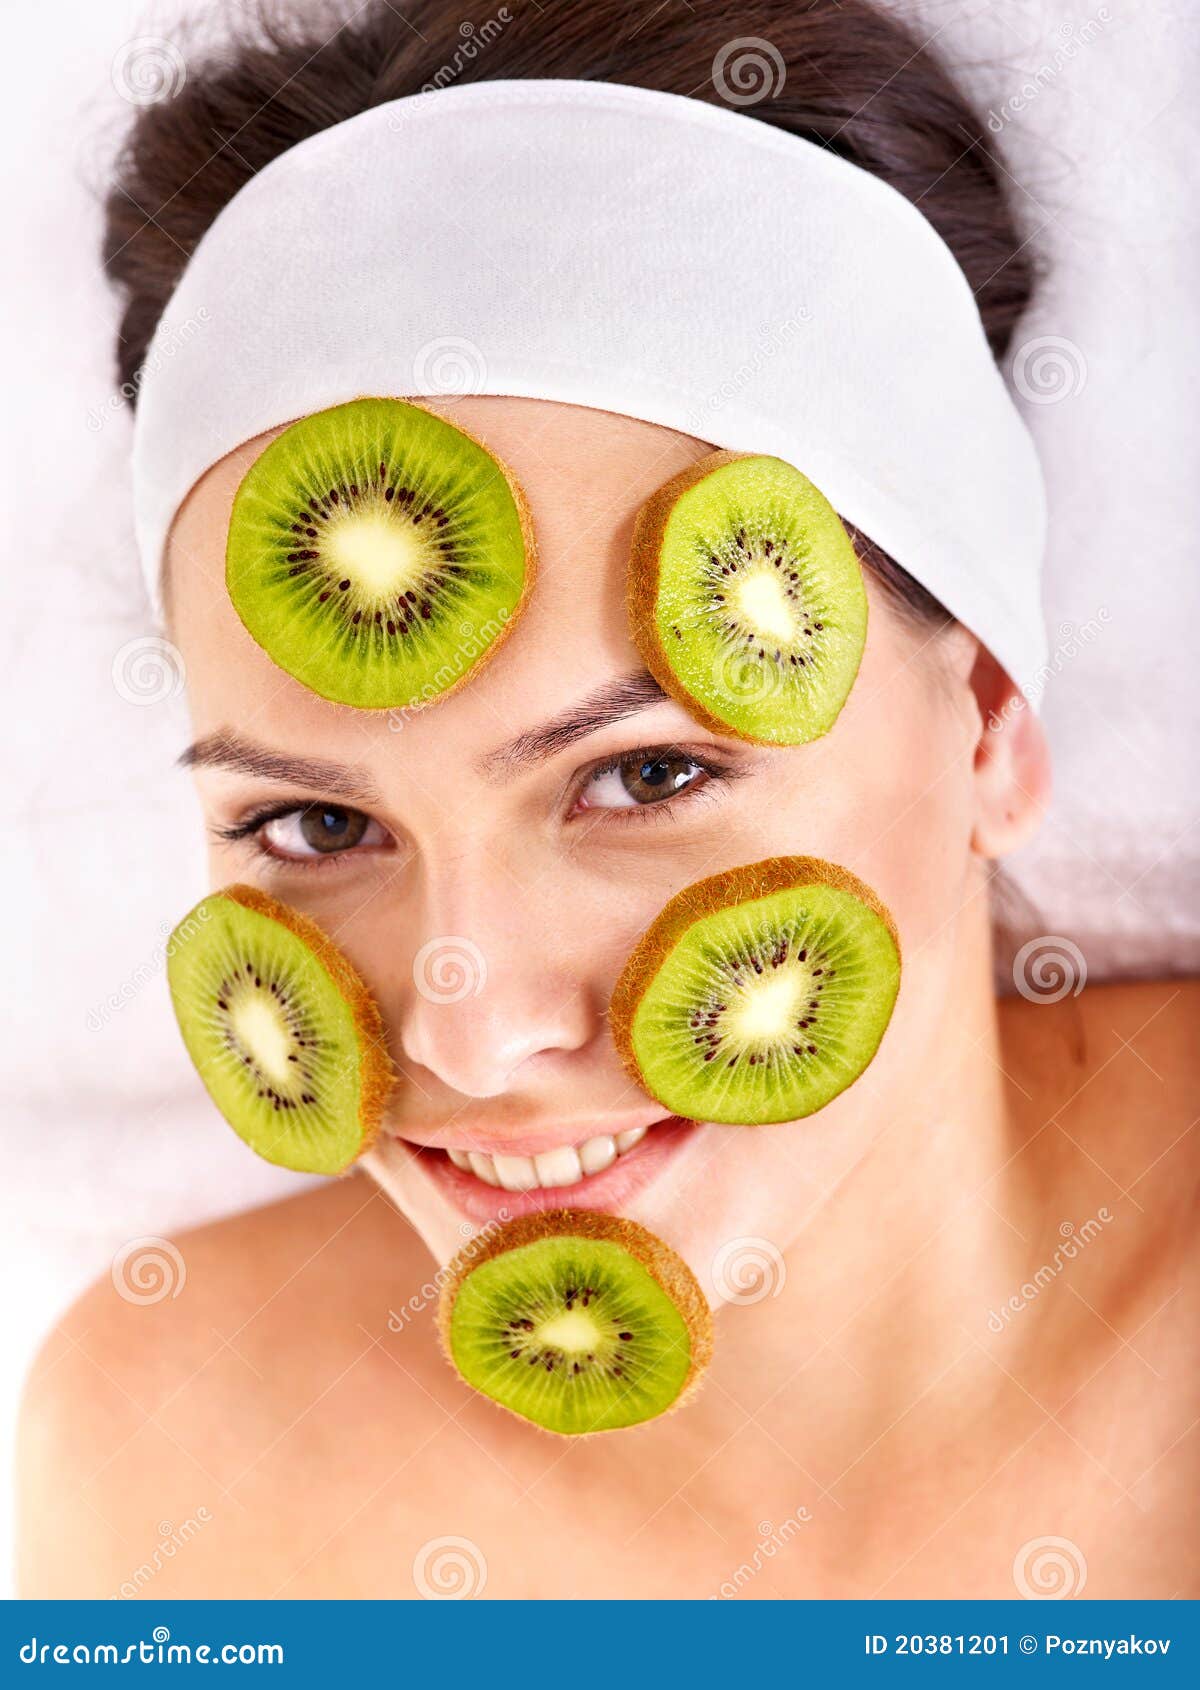 homemade fruit facial masks